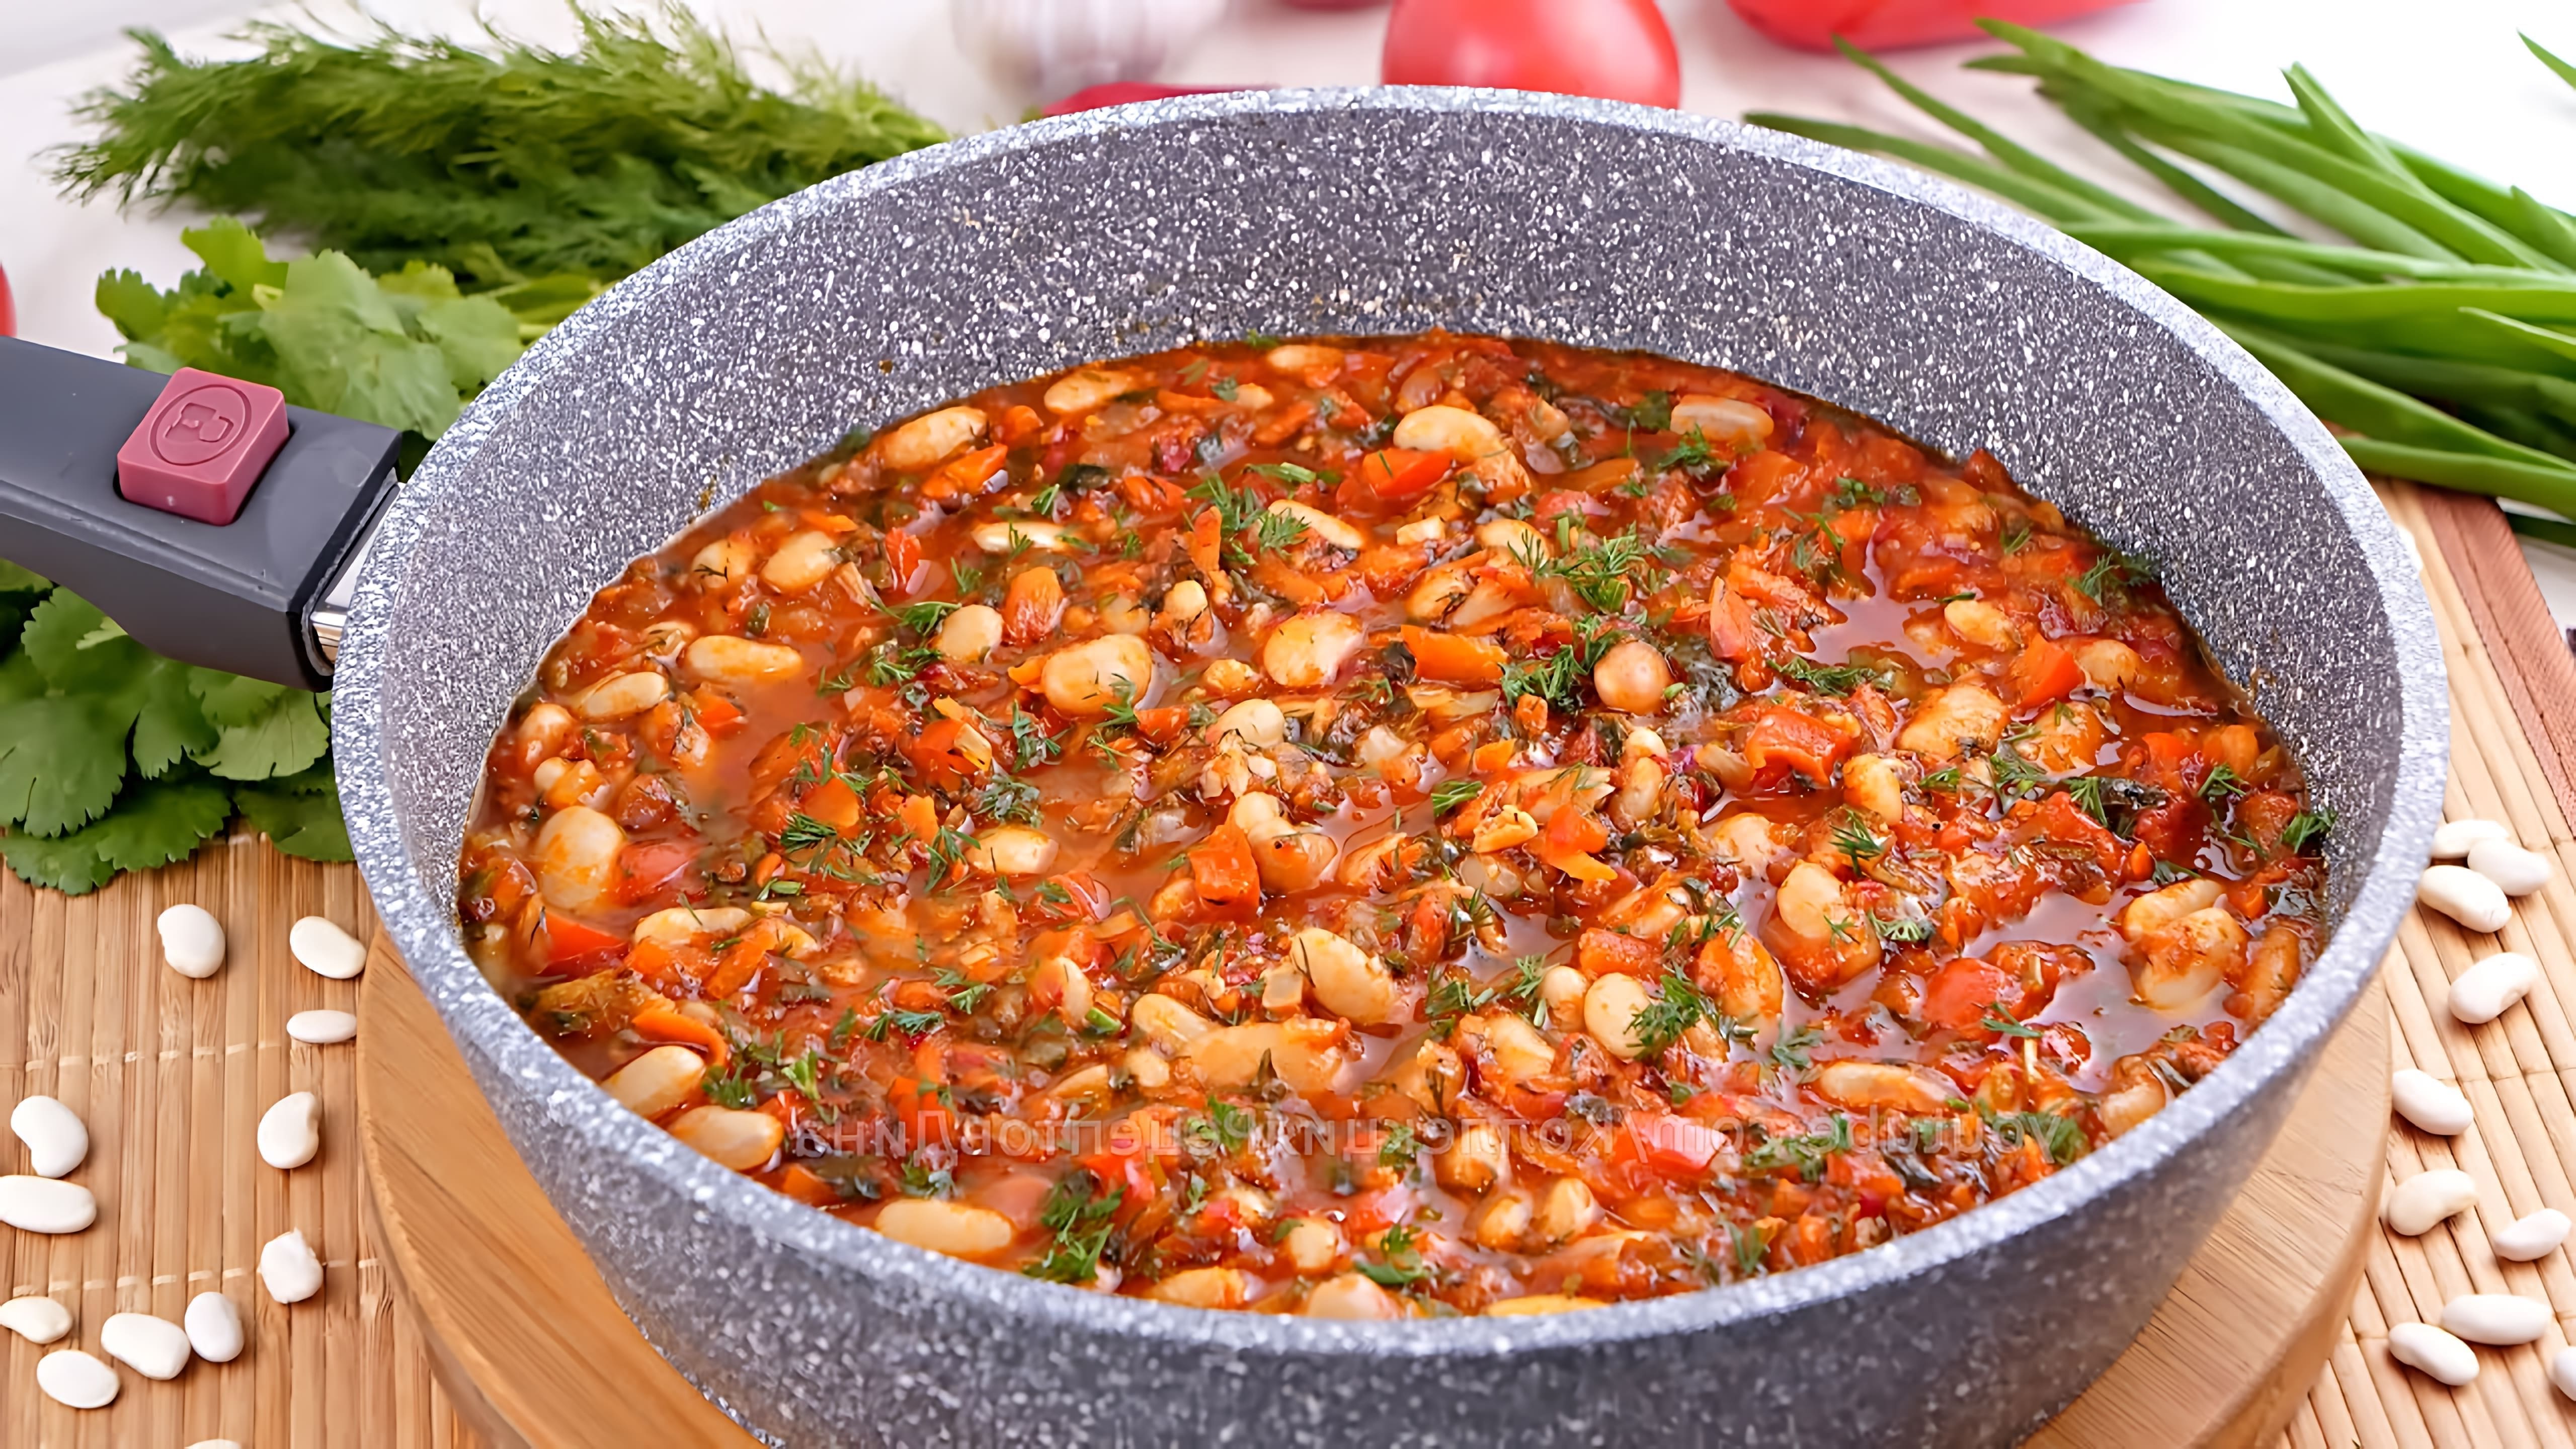 Видео рецепт бобов с овощами в томатном соусе, описывая его как вкусное, сытное и питательное блюдо